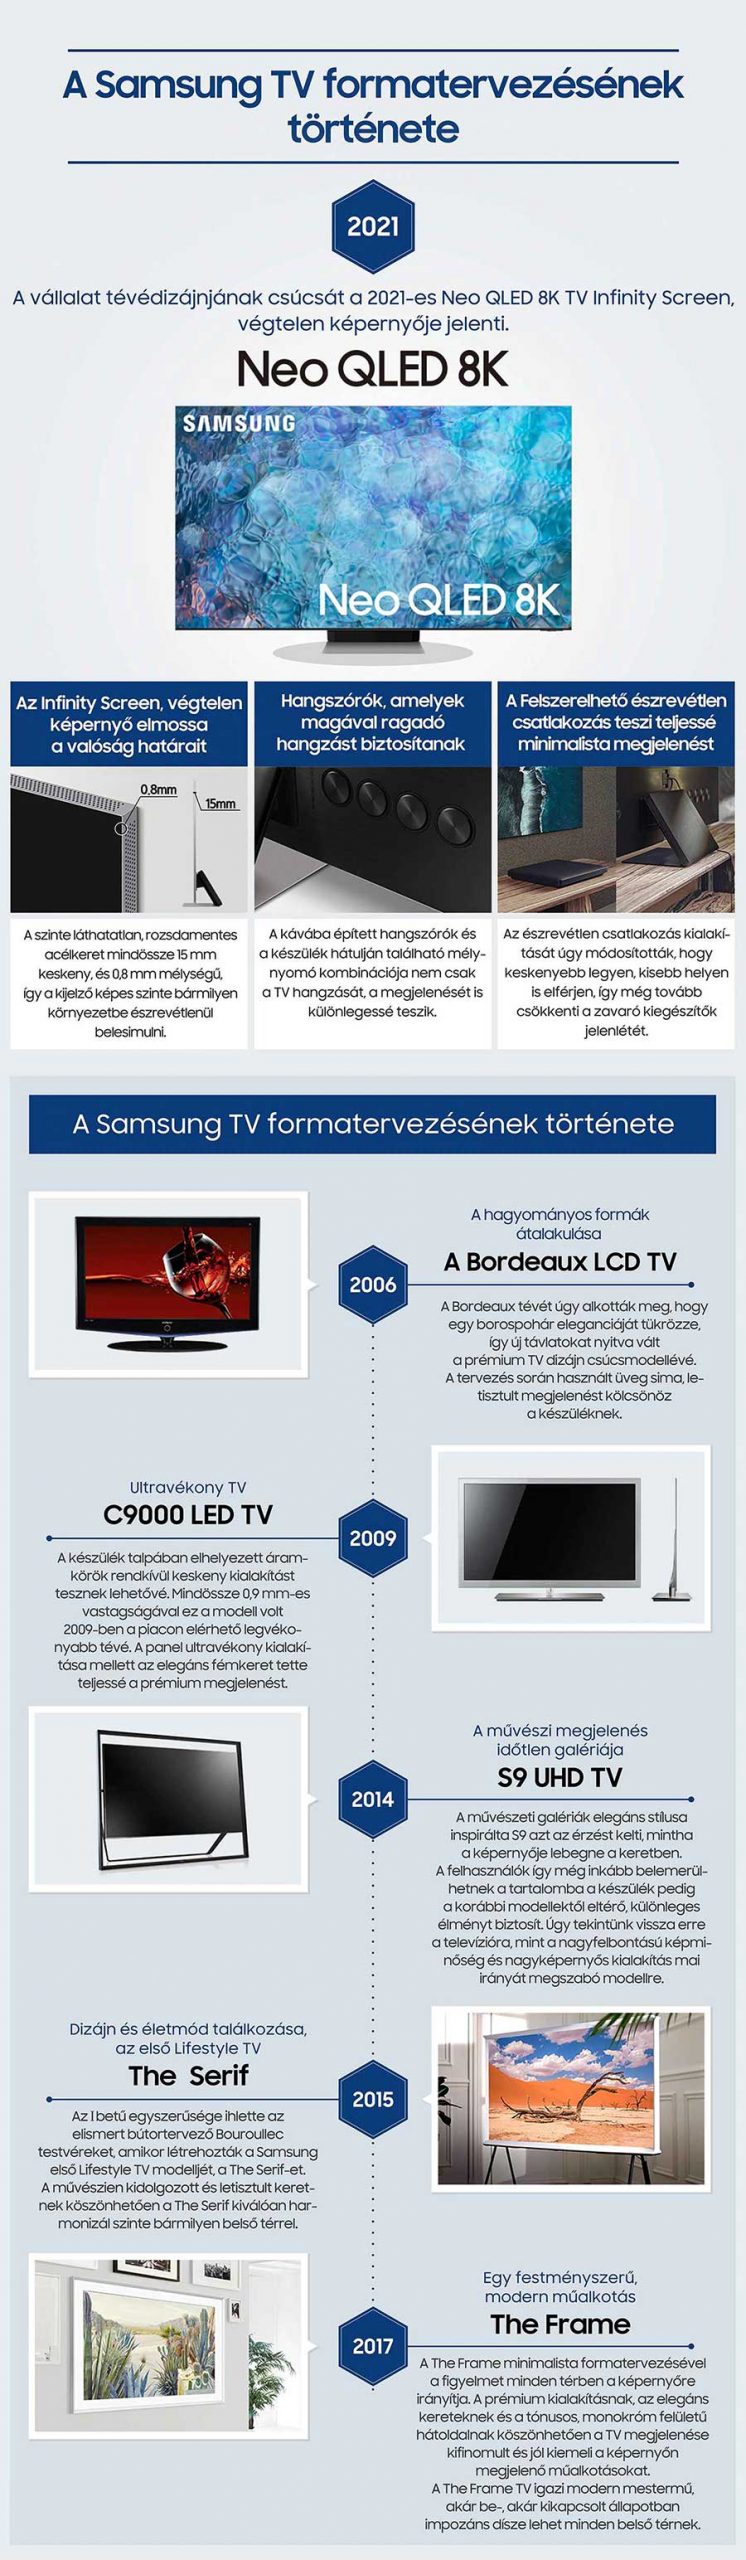 A Samsung TV formatervezésének története